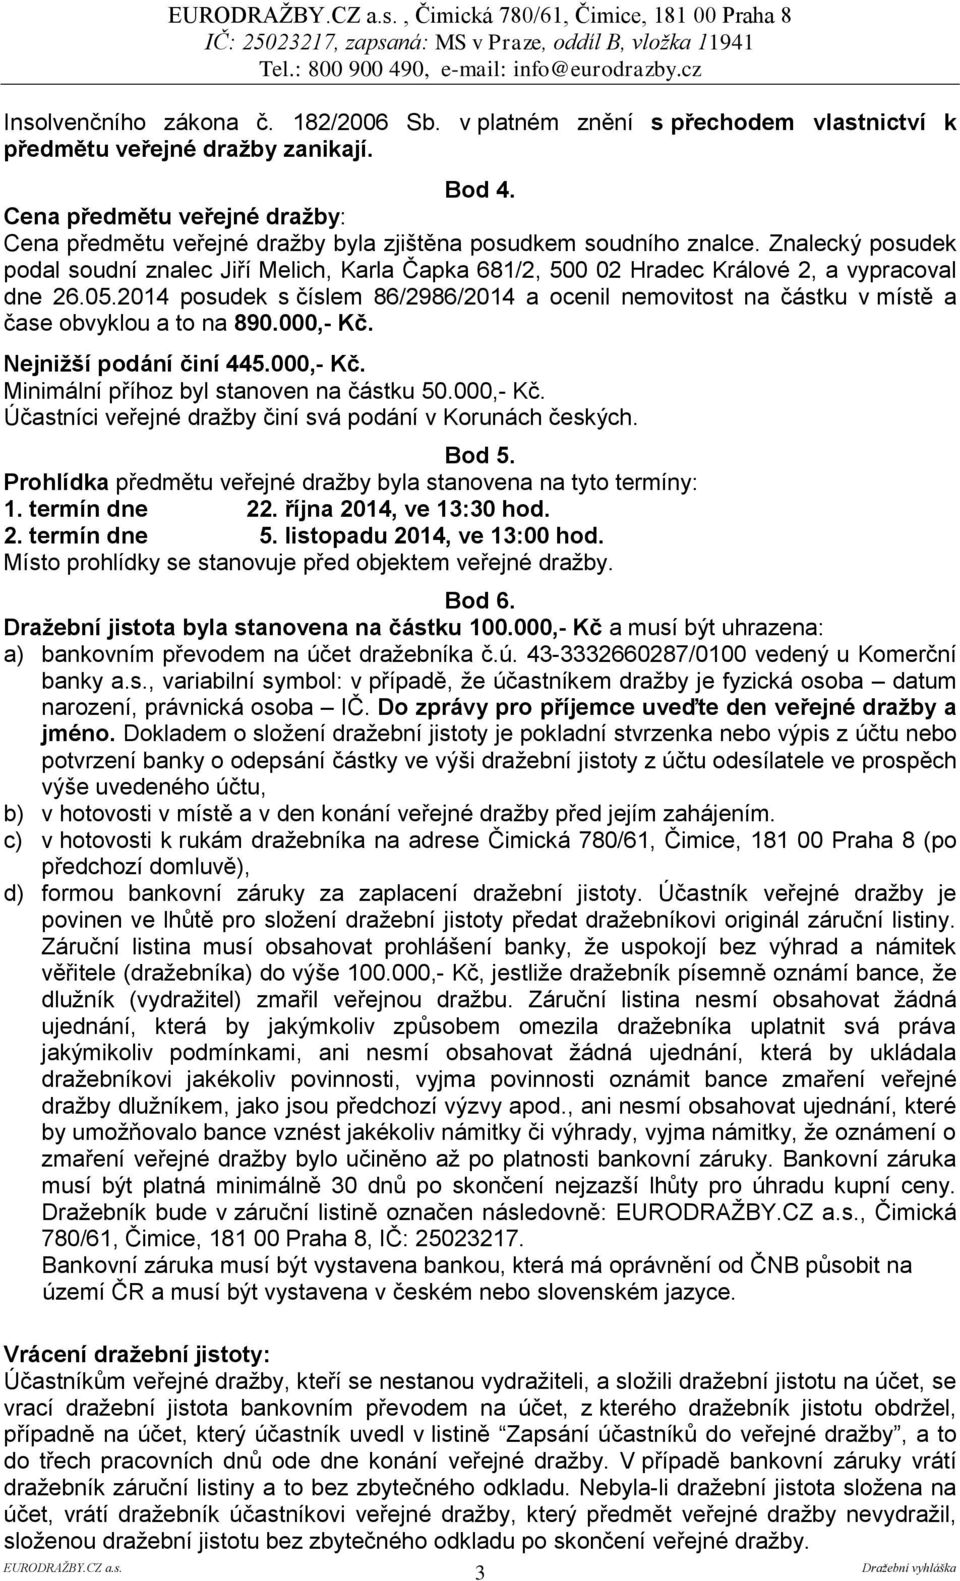 Znalecký posudek podal soudní znalec Jiří Melich, Karla Čapka 681/2, 500 02 Hradec Králové 2, a vypracoval dne 26.05.